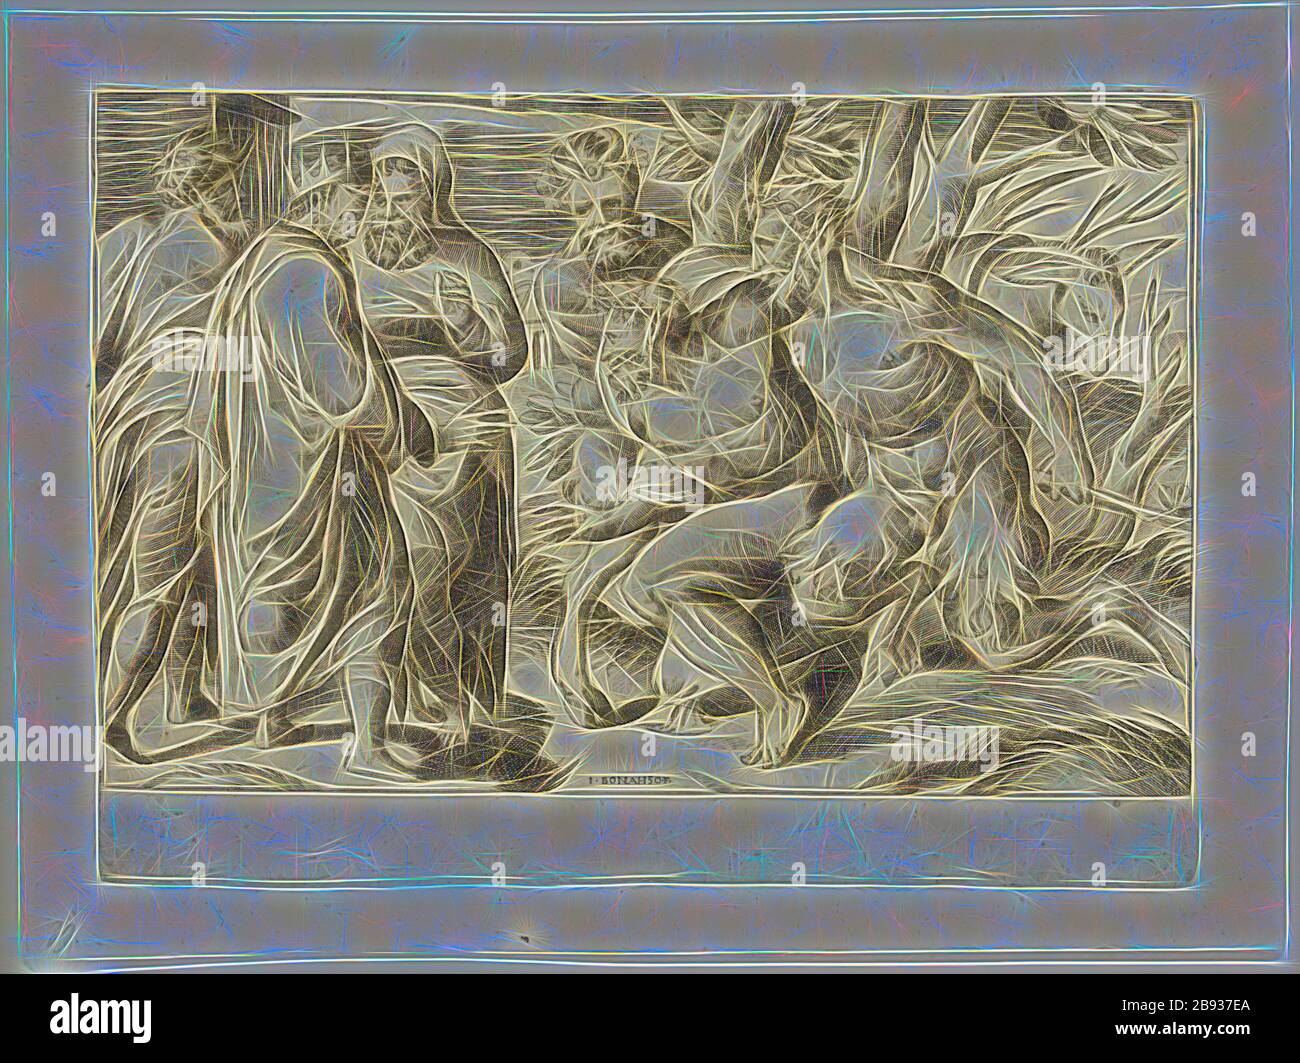 Guilio di Antonio Bonasone, italien, 1498-1580, deux satyres apportent Silenus au roi Midas, entre 1500 et 1580, gravure imprimée à l'encre noire sur papier ponté, plaque: 6 1/4 × 8 5/8 pouces (15.9 × 21.9 cm), repensée par Gibon, conception de glanissement chaud et de rayons de lumière. L'art classique réinventé avec une touche moderne. La photographie inspirée du futurisme, qui embrasse l'énergie dynamique de la technologie moderne, du mouvement, de la vitesse et révolutionne la culture. Banque D'Images